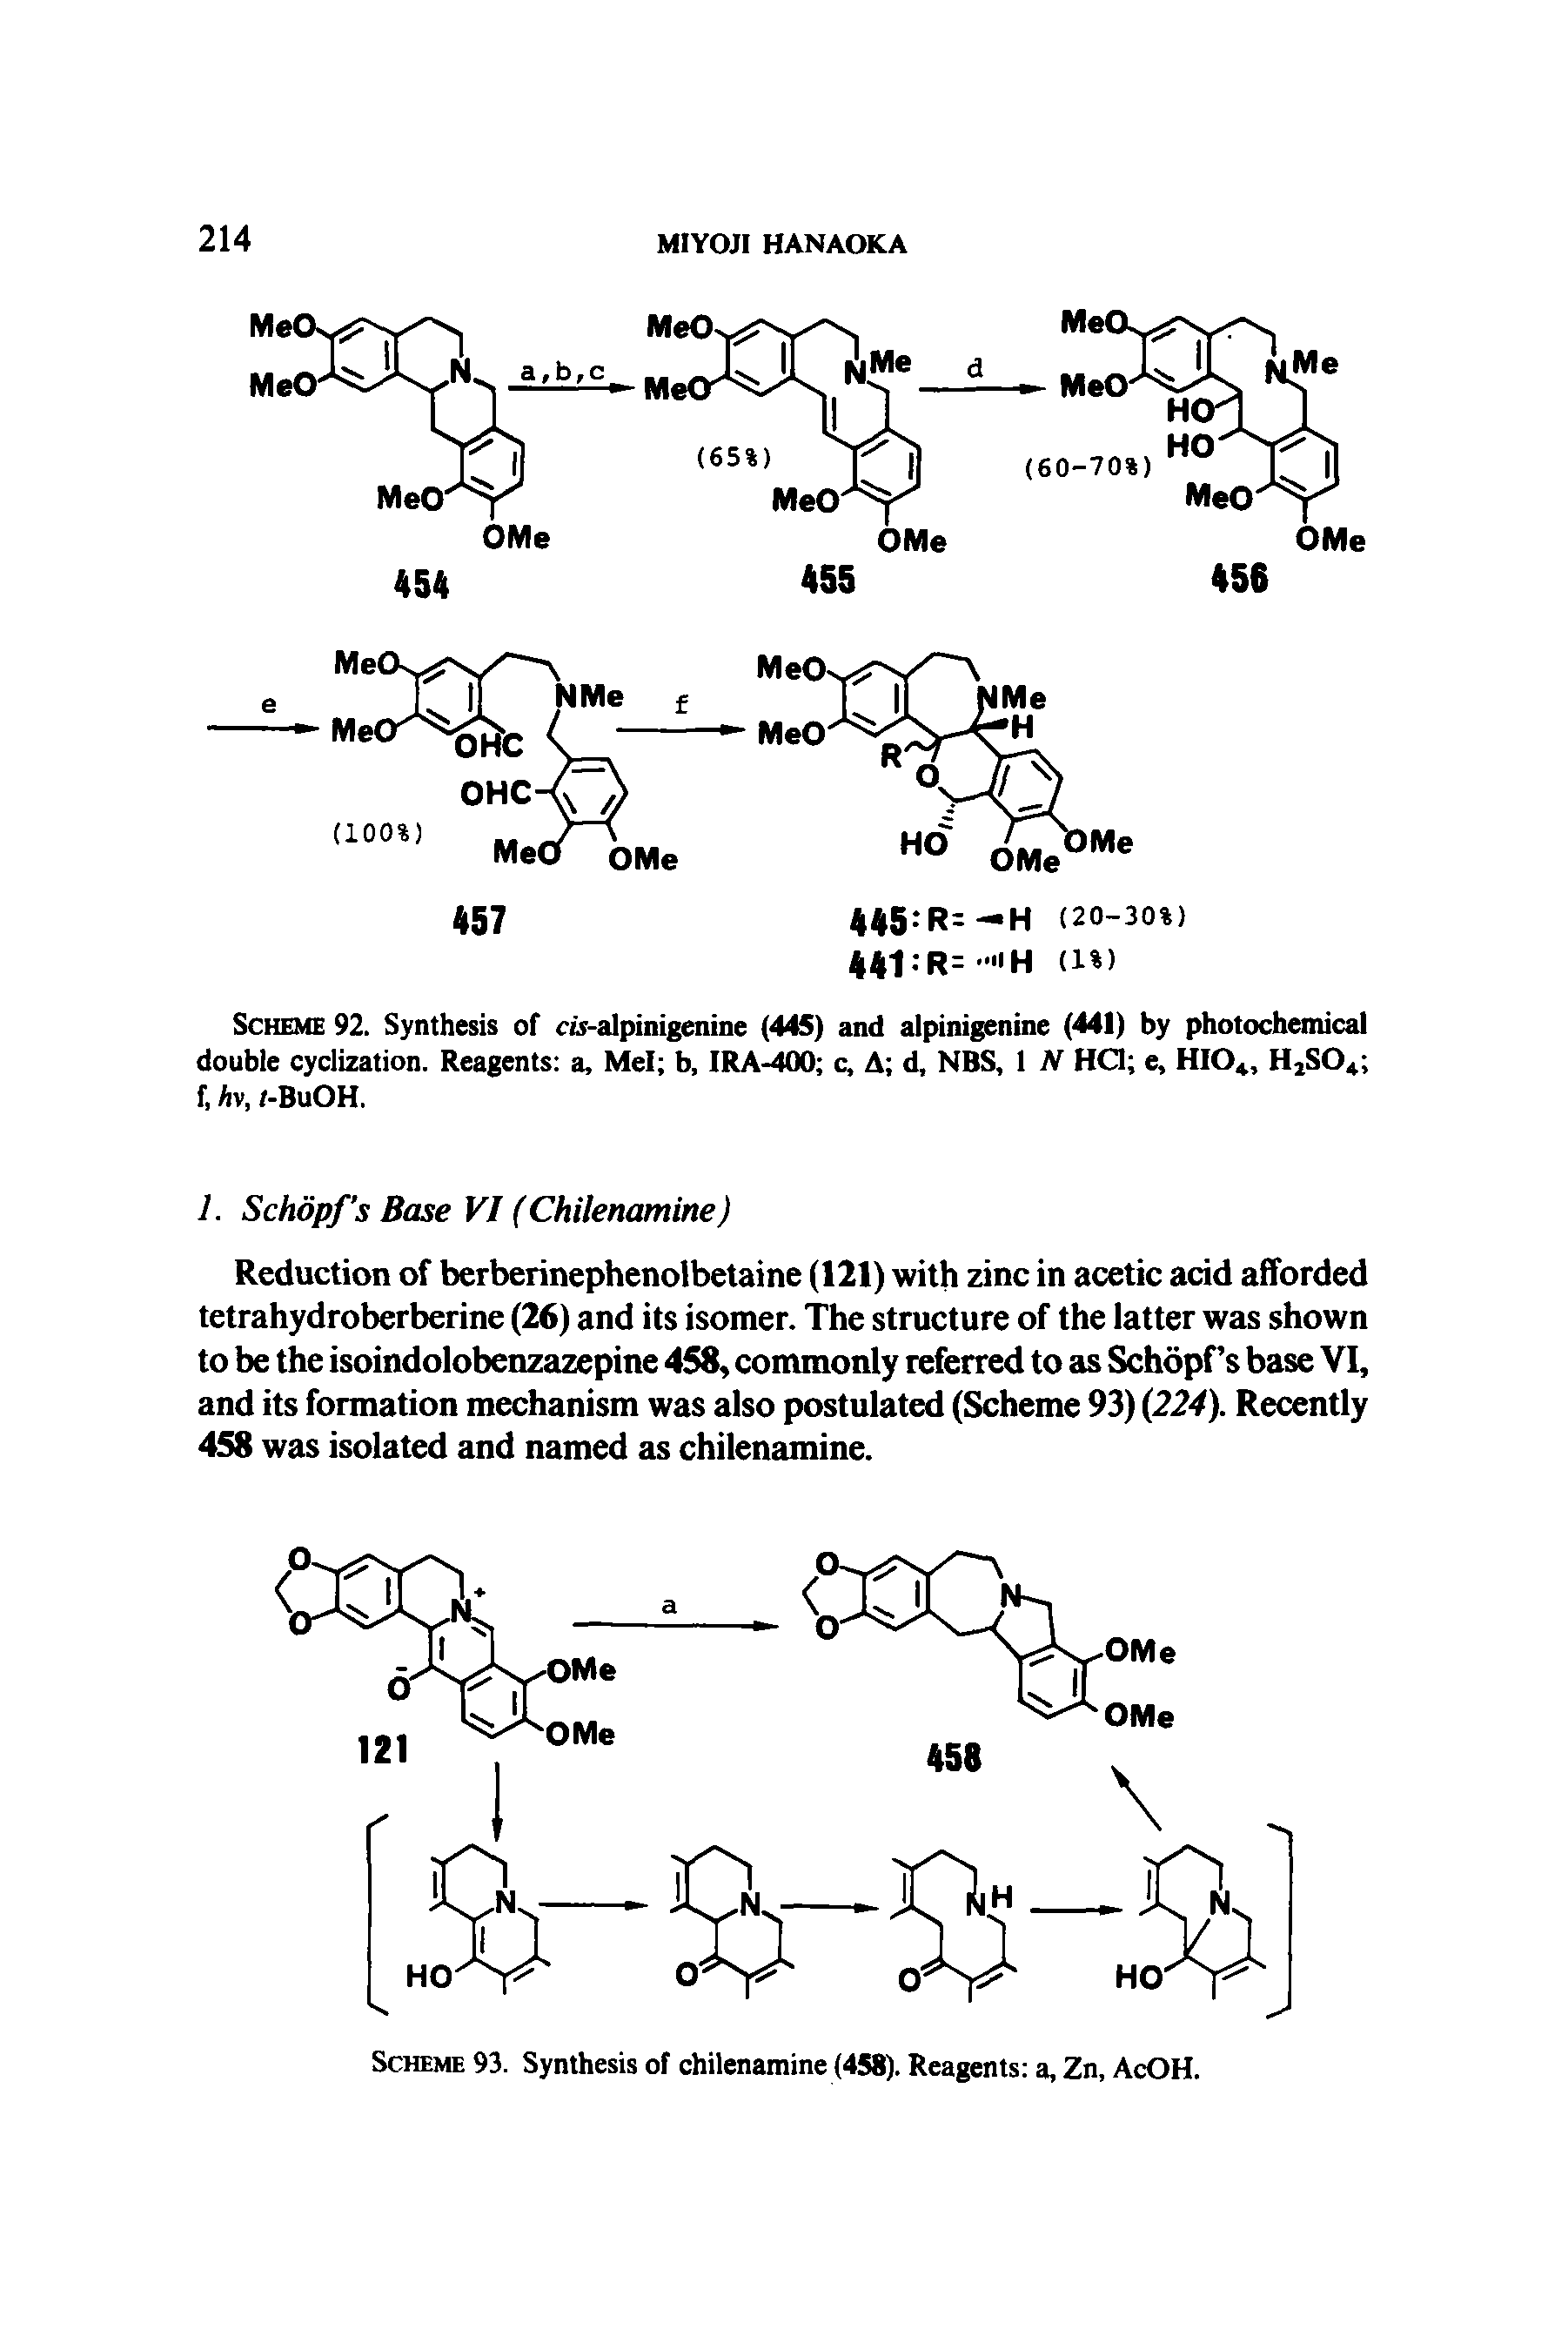 Scheme 92. Synthesis of cu-alpinigenine (445) and alpinigenine (441) by photochemical double cyclization. Reagents a, Mel b, IRA-400 c, A d, NBS, 1 N HO e, HI04, H2S04 f, Av, /-BuOH.